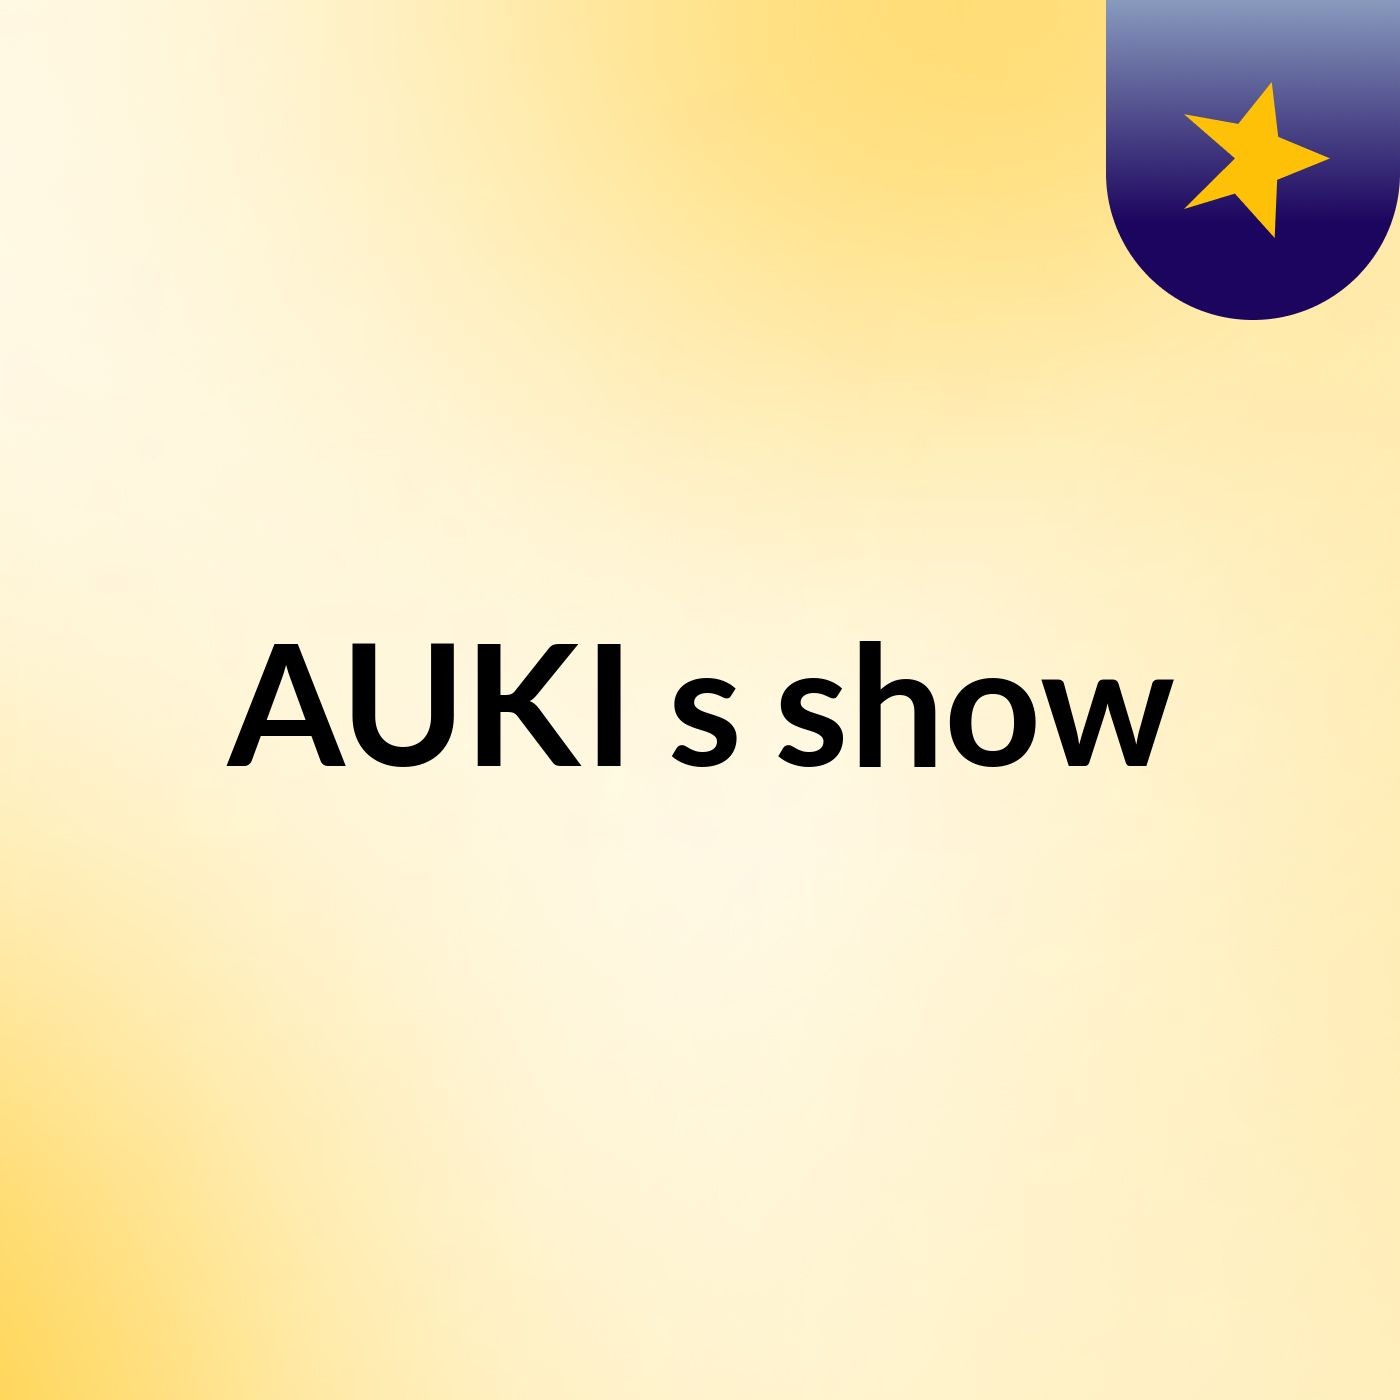 AUKI's show